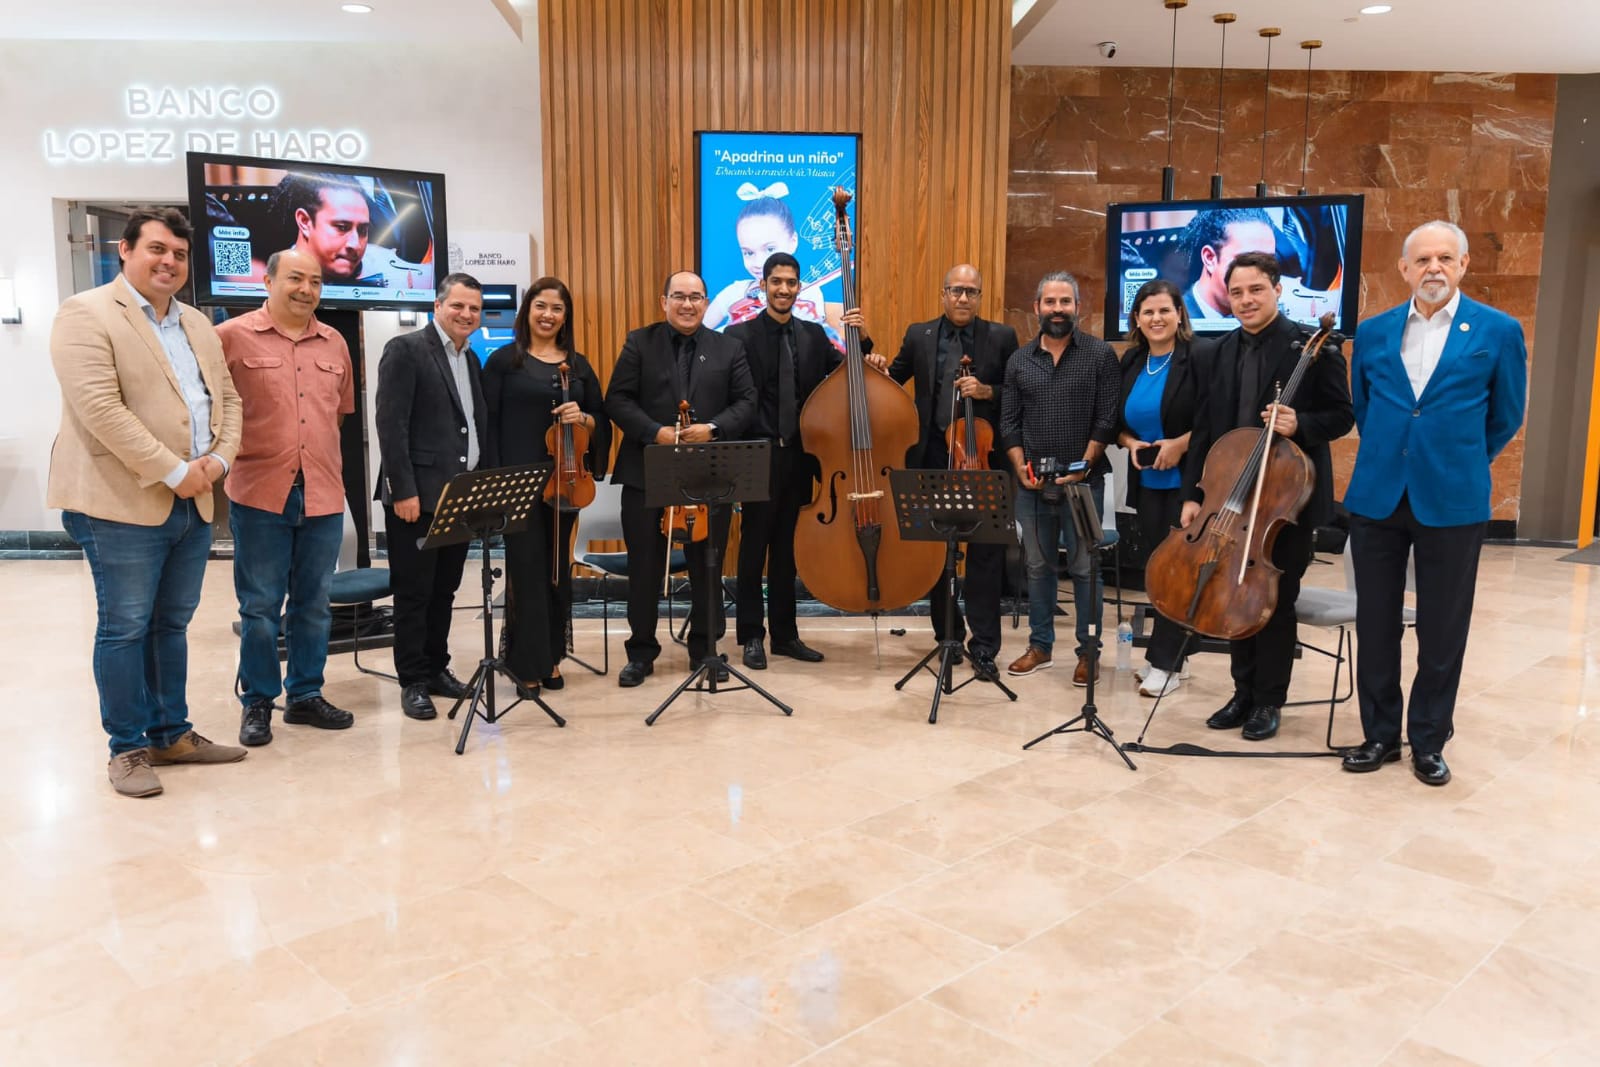 Spatium Coworking-RD se suma a programa "Apadrina un niño" de la Fundación de la Orquesta Binacional Dominico-Venezolana